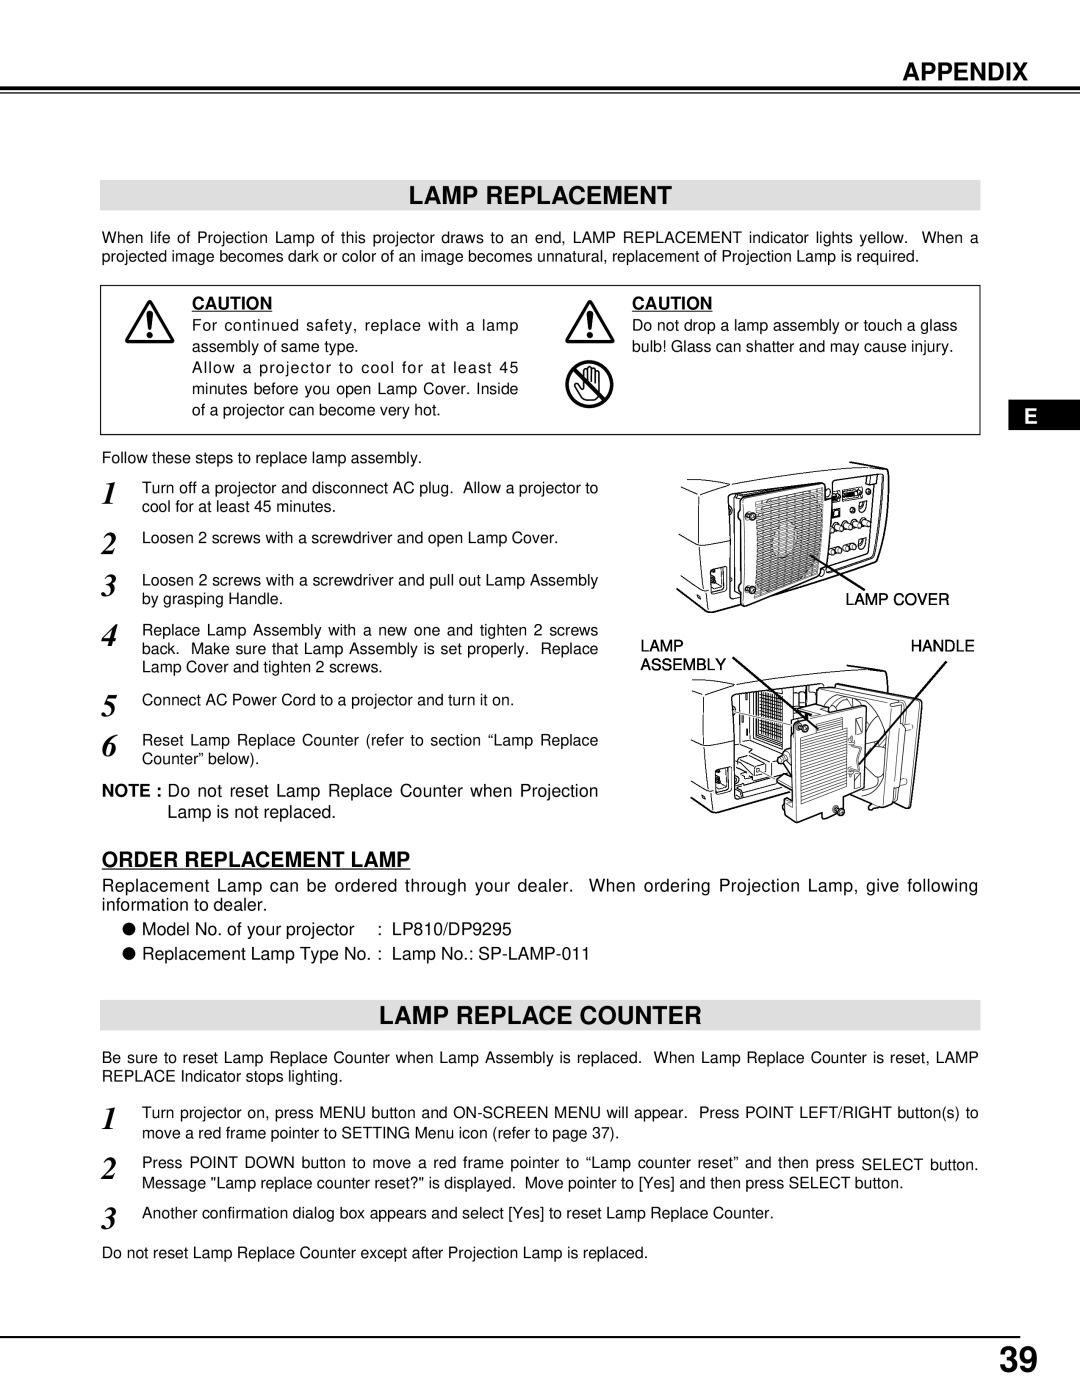 InFocus DP9295 manual Appendix Lamp Replacement, Lamp Replace Counter, Order Replacement Lamp 